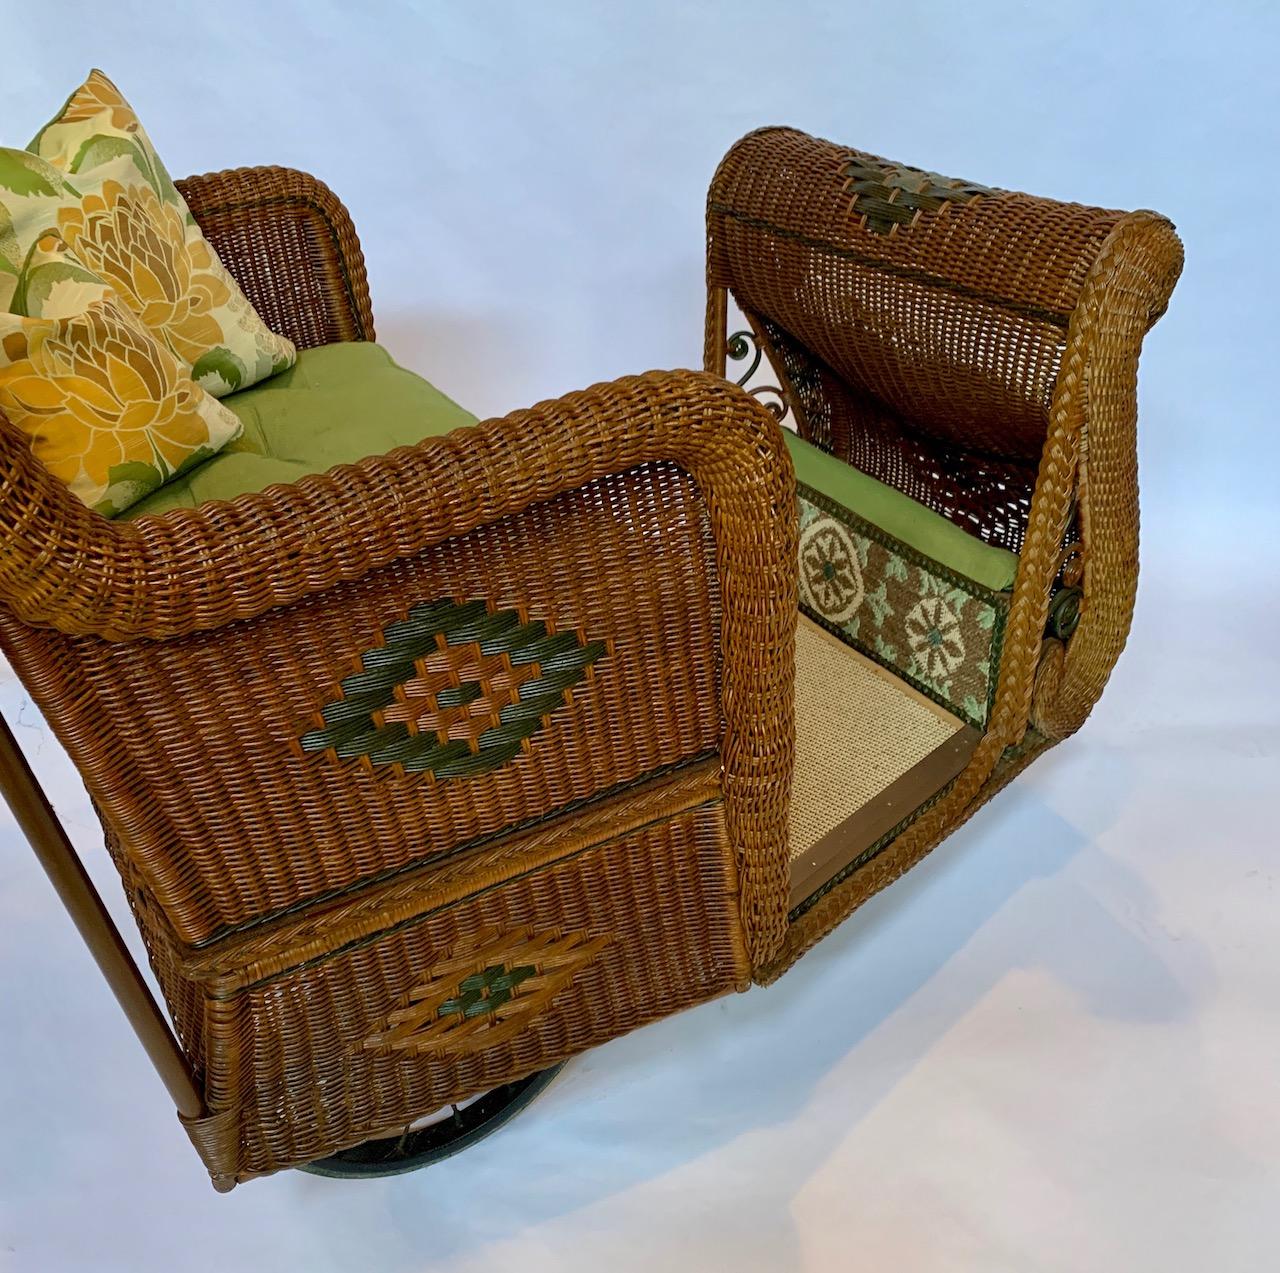 Hand-Woven Antique Natural Wicker Estate Cart / Rolling Boardwalk Cart